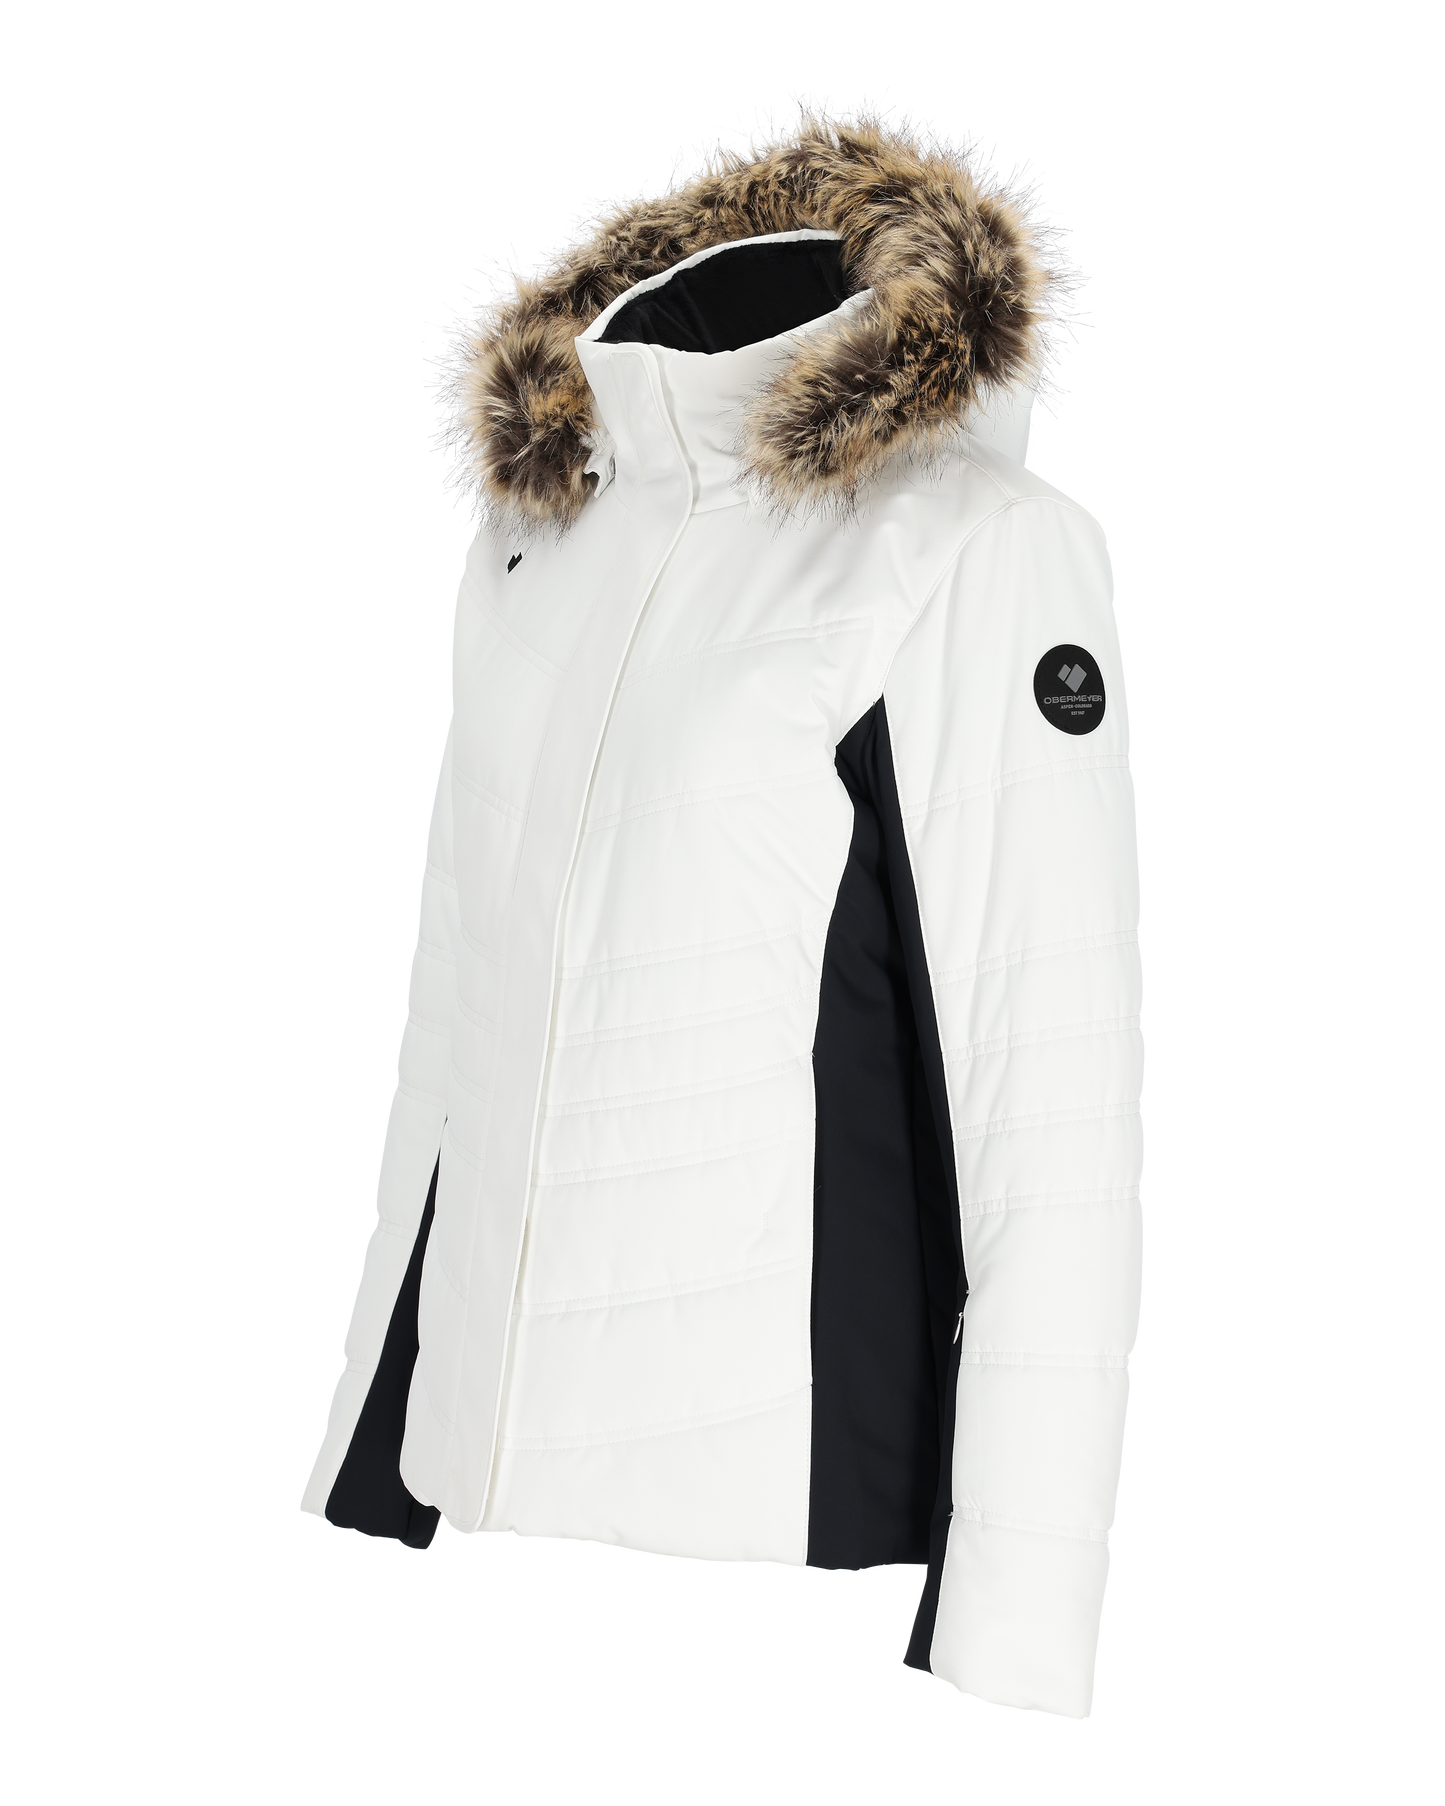 Obermeyer Tuscany II Jacket - Women's